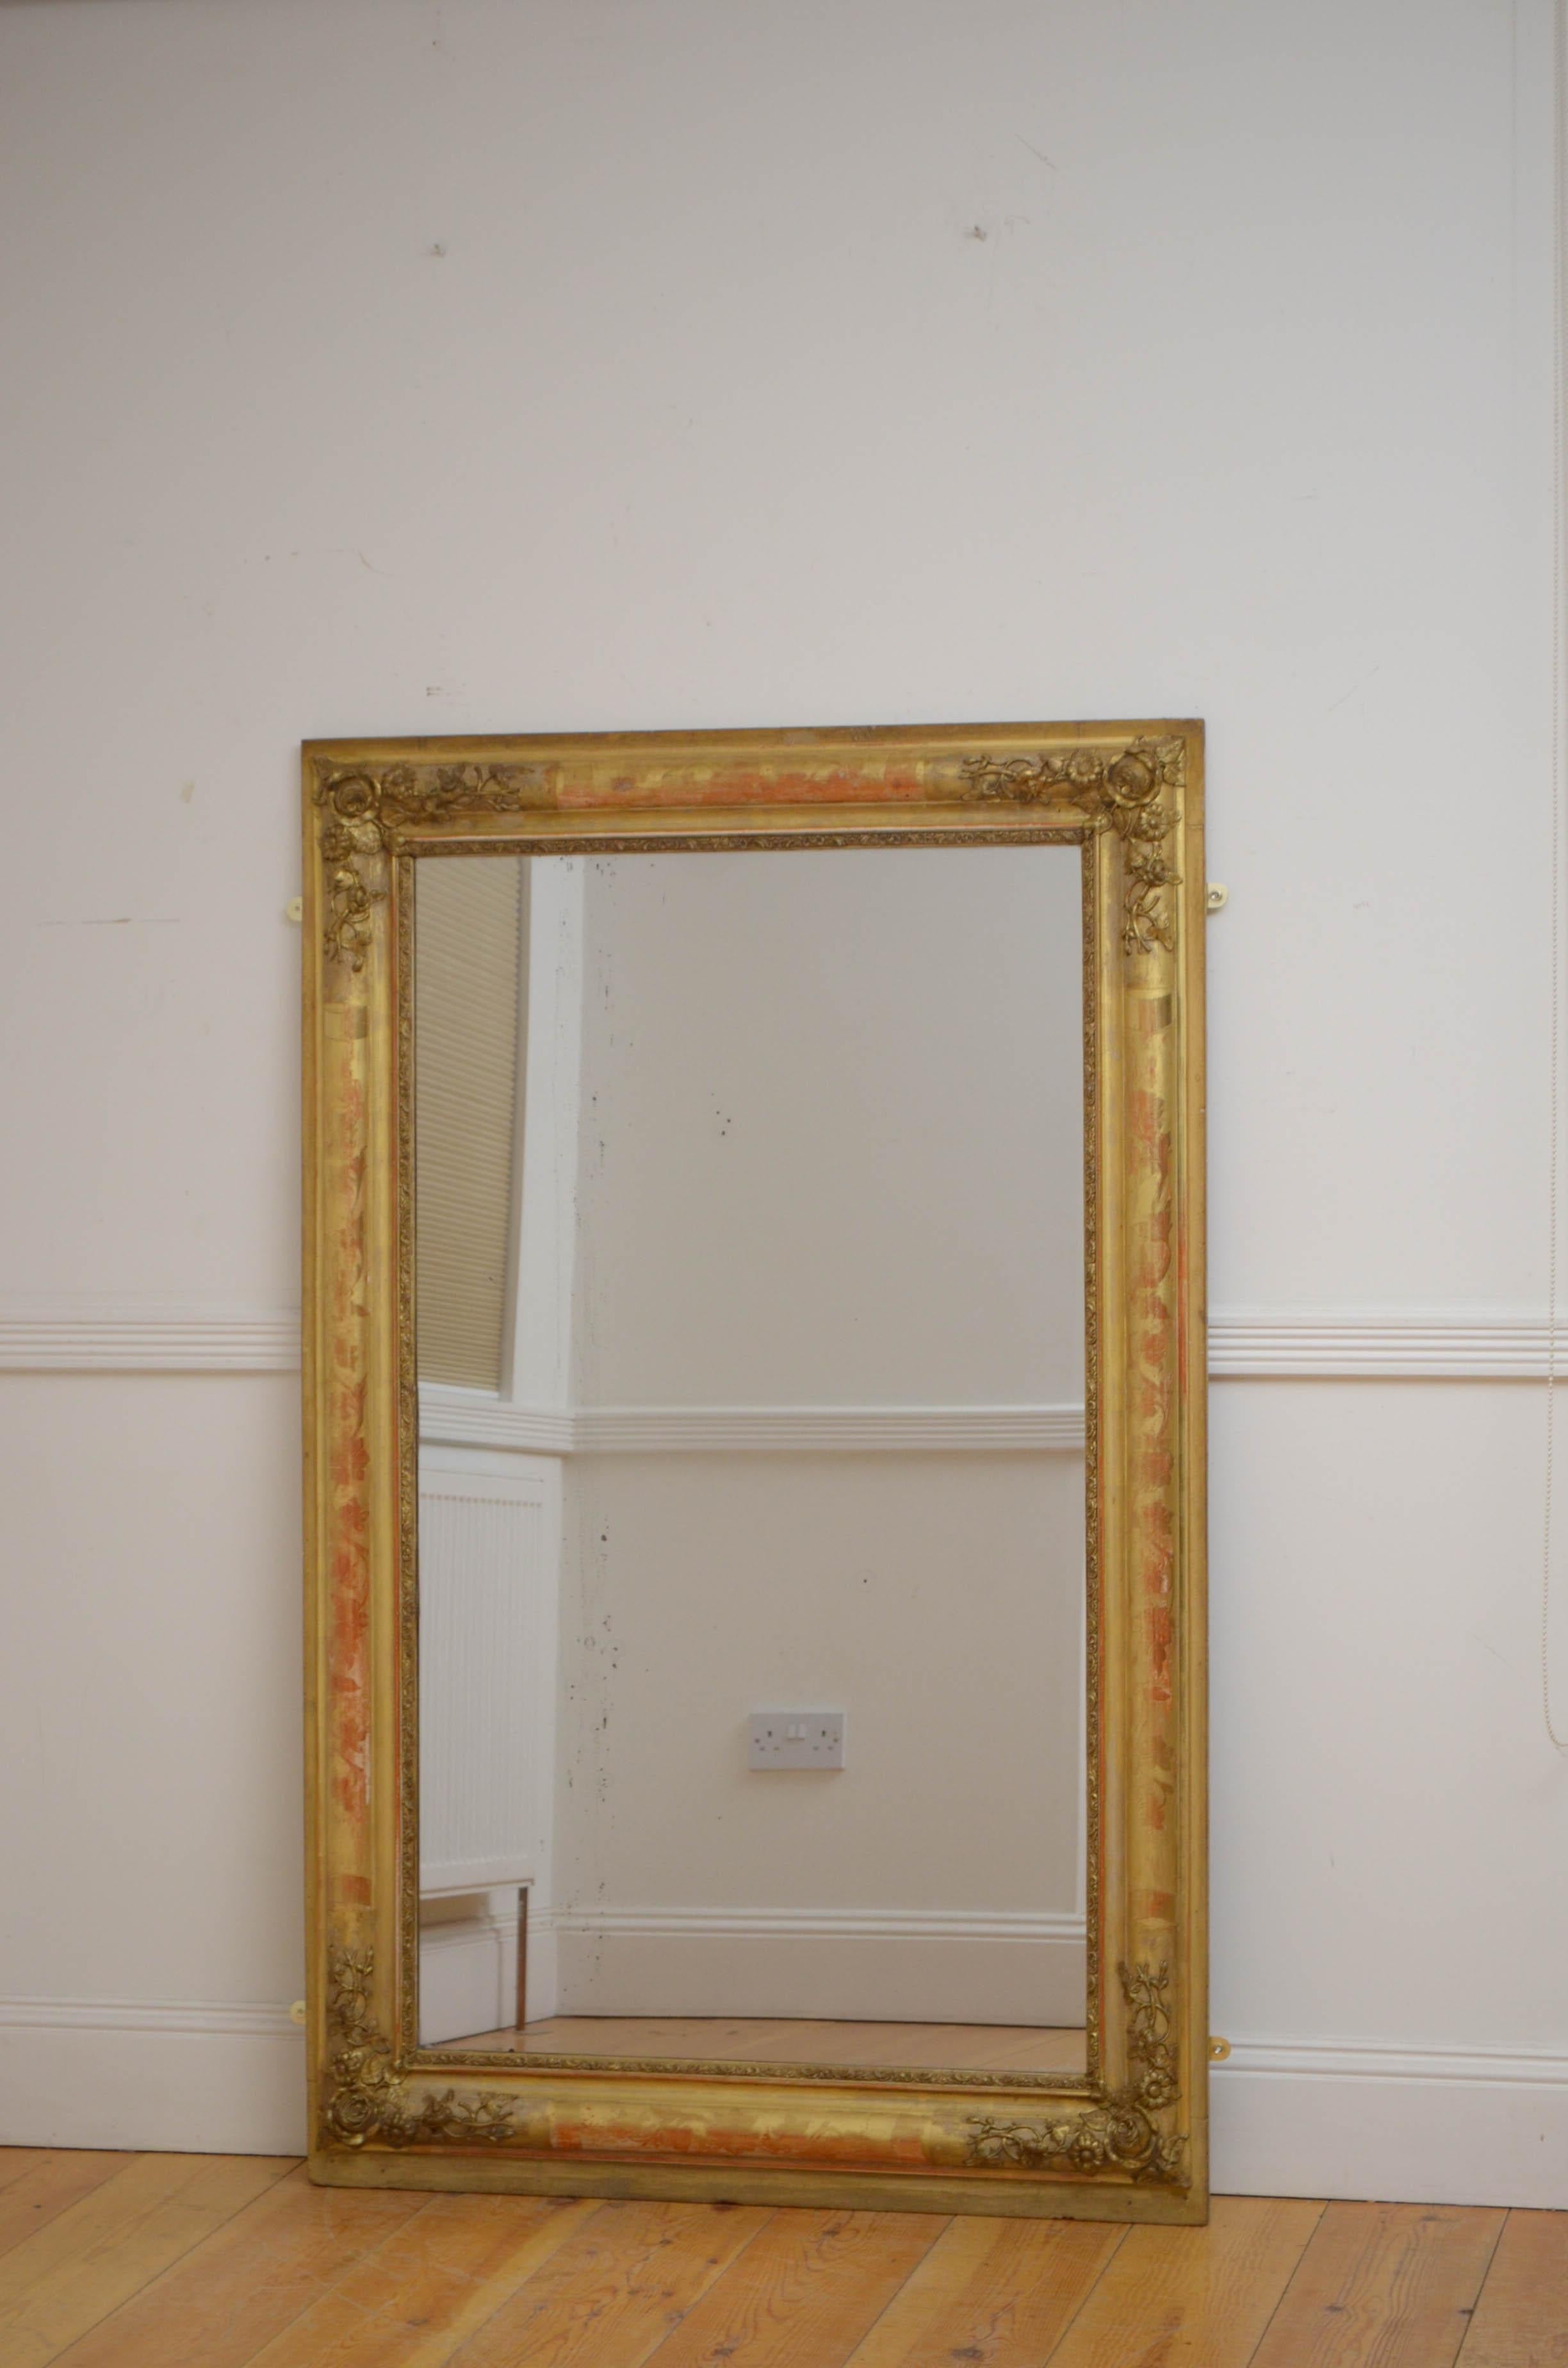 Sn5144 Großer französischer vergoldeter Wandspiegel mit Originalglas und einigen Mängeln in einem vergoldeten Rahmen mit Blumenverzierung in den Ecken. Dieser antike Spiegel bewahrt sein ursprüngliches Glas, die ursprüngliche Vergoldung und die